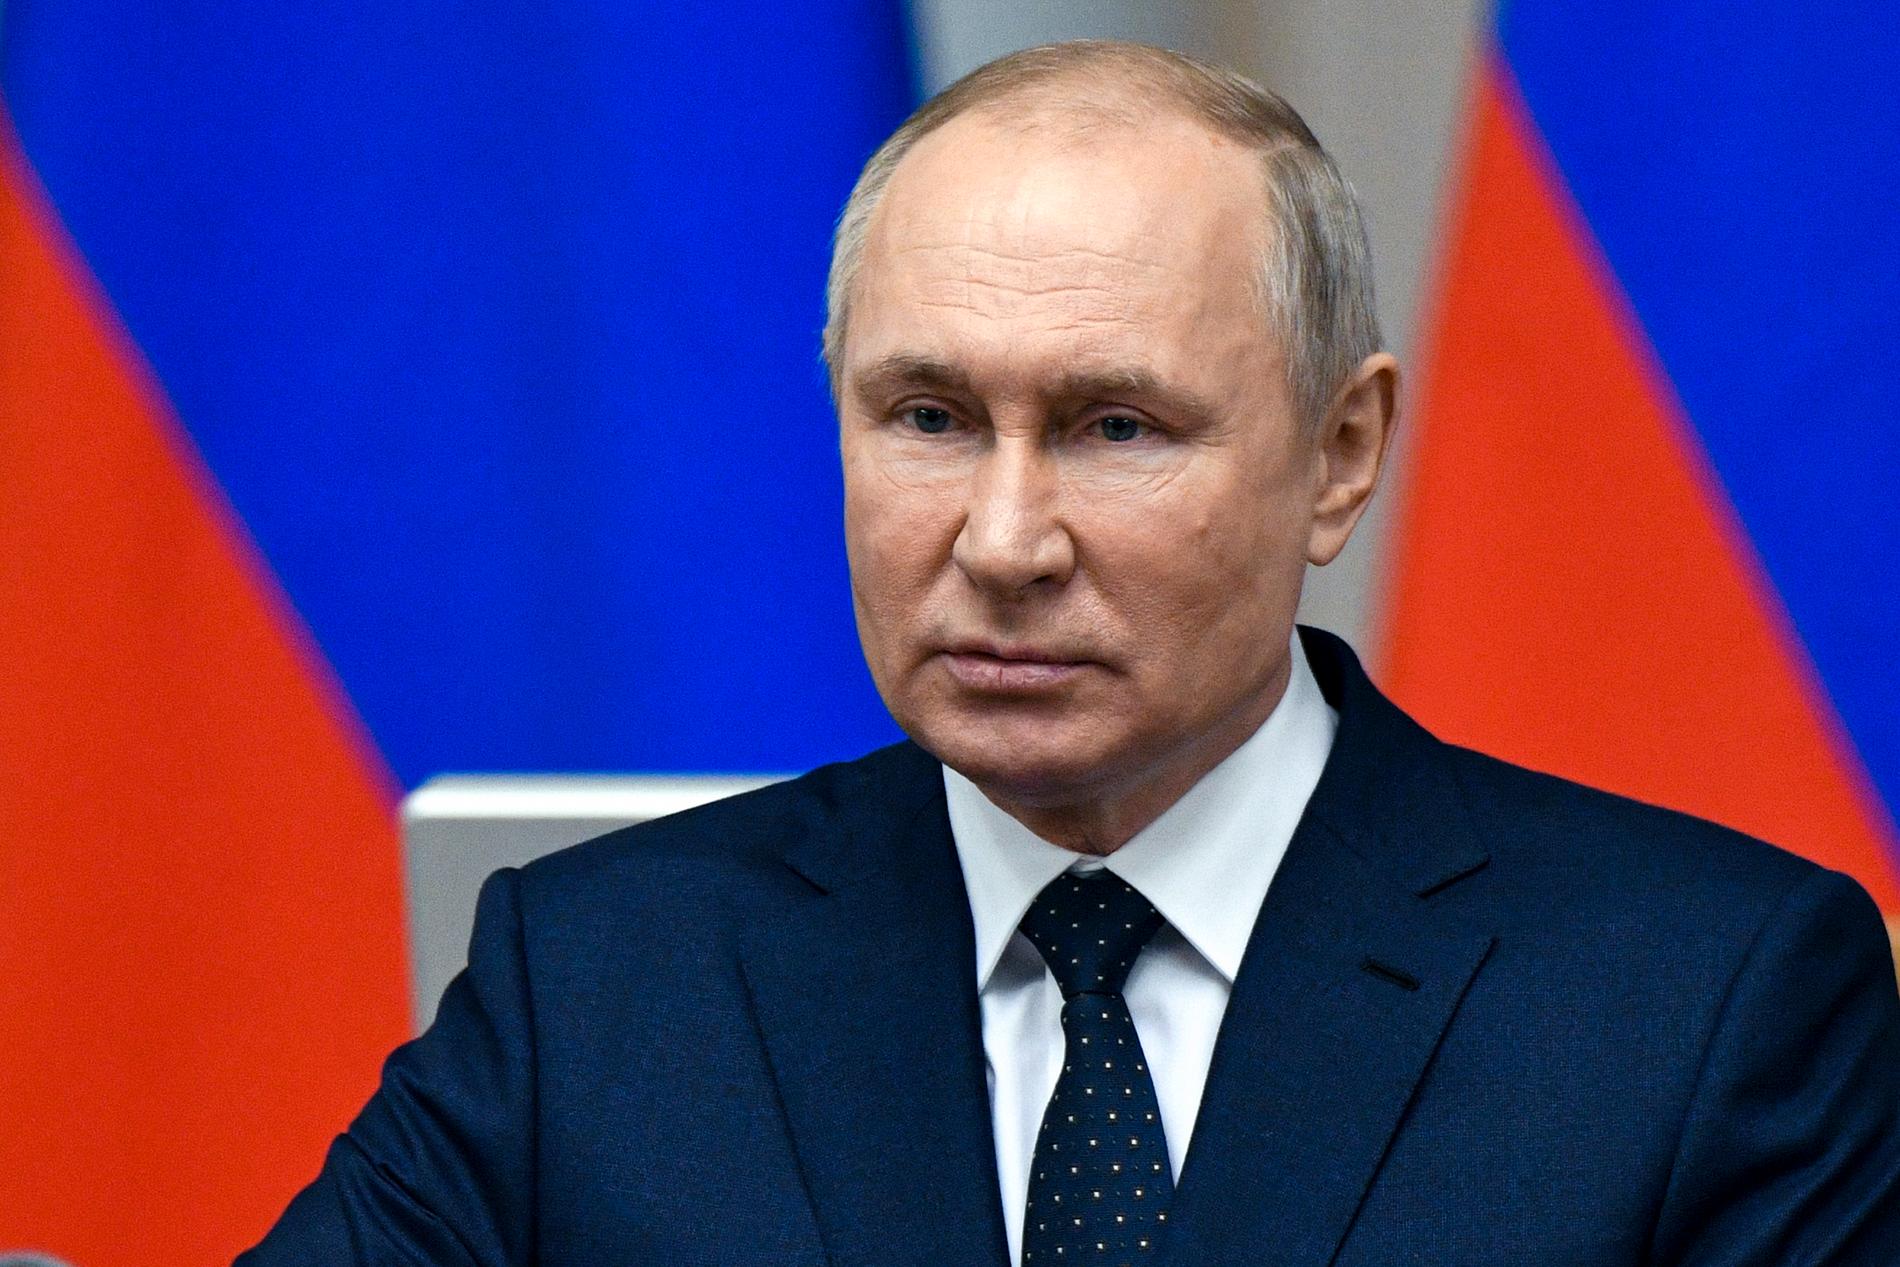 Fortsätter Putin på den inslagna vägen har han snart återupprättat skräckväldet från Sovjet-tiden, skriver Wolfgang Hansson.